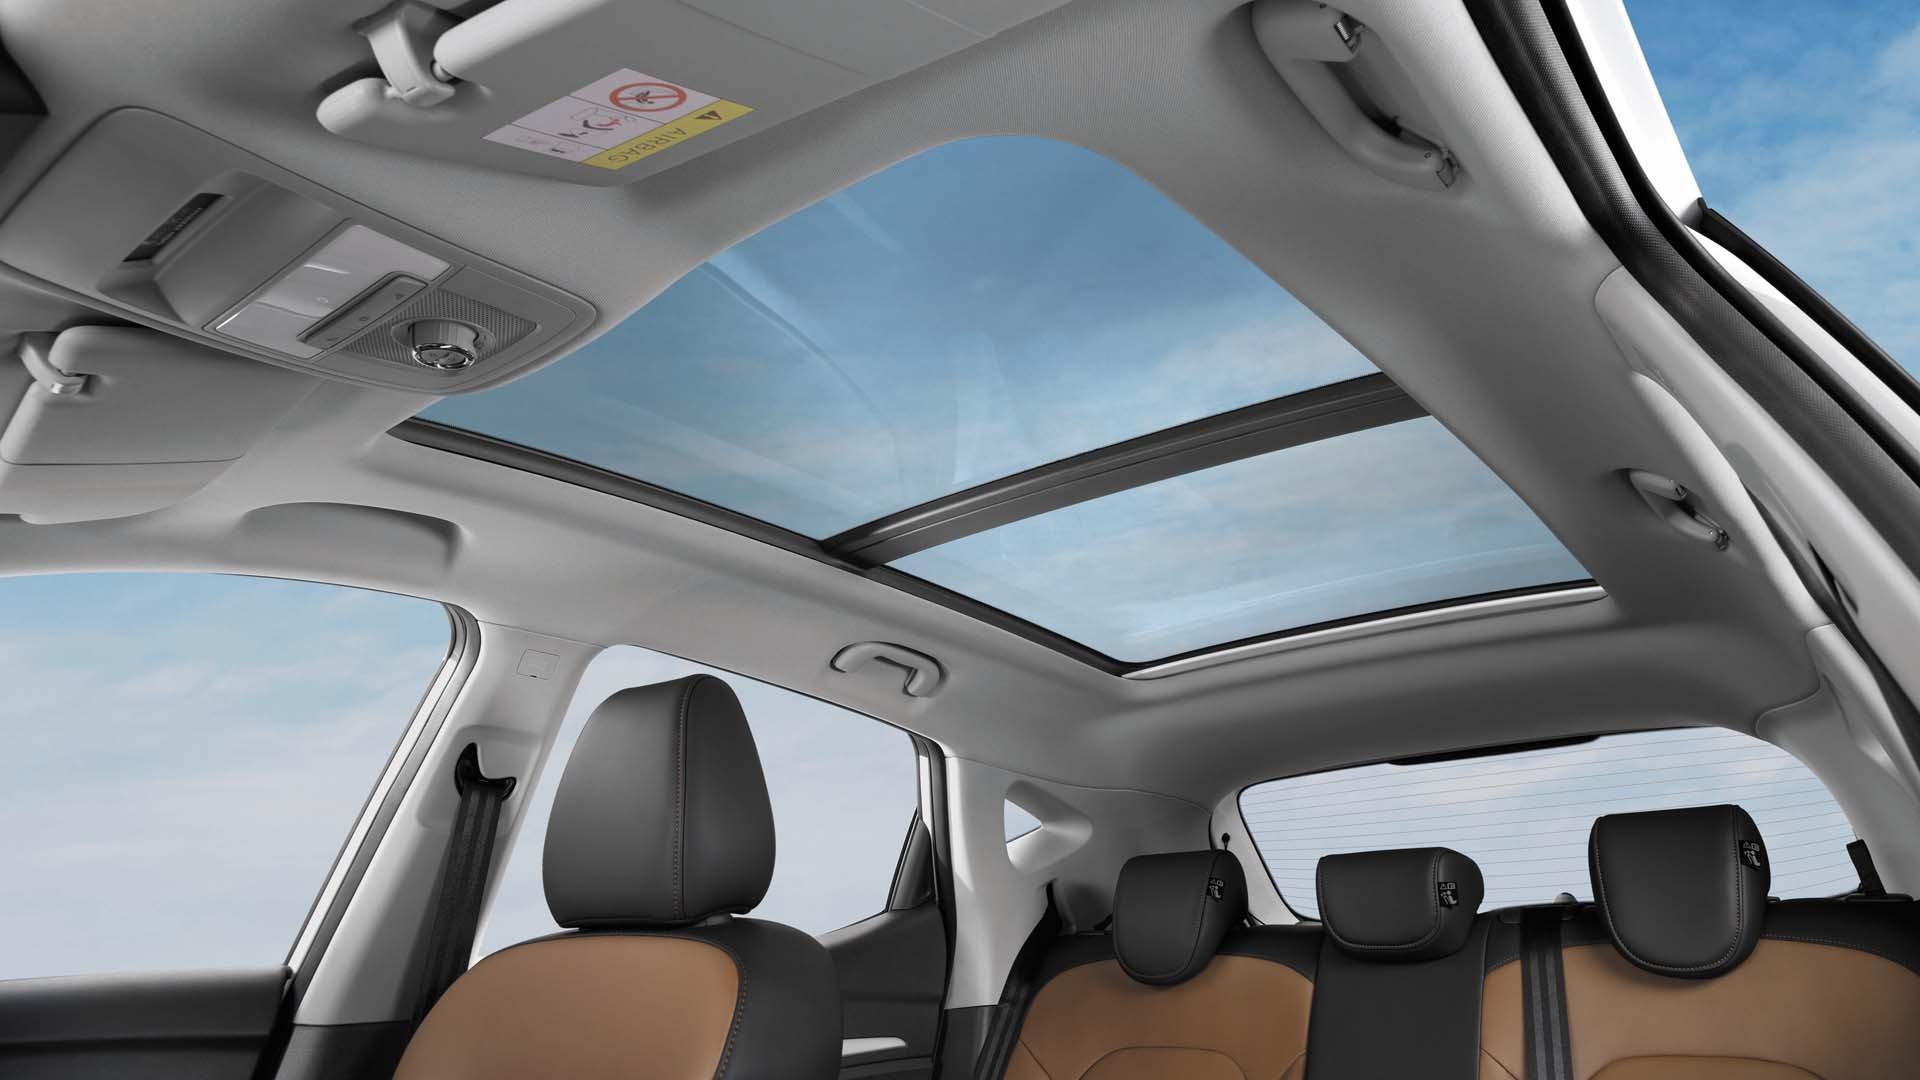 Fitur panoramic sunroof yang ada pada trim MG ZS tertentu (MG Motor Indonesia)